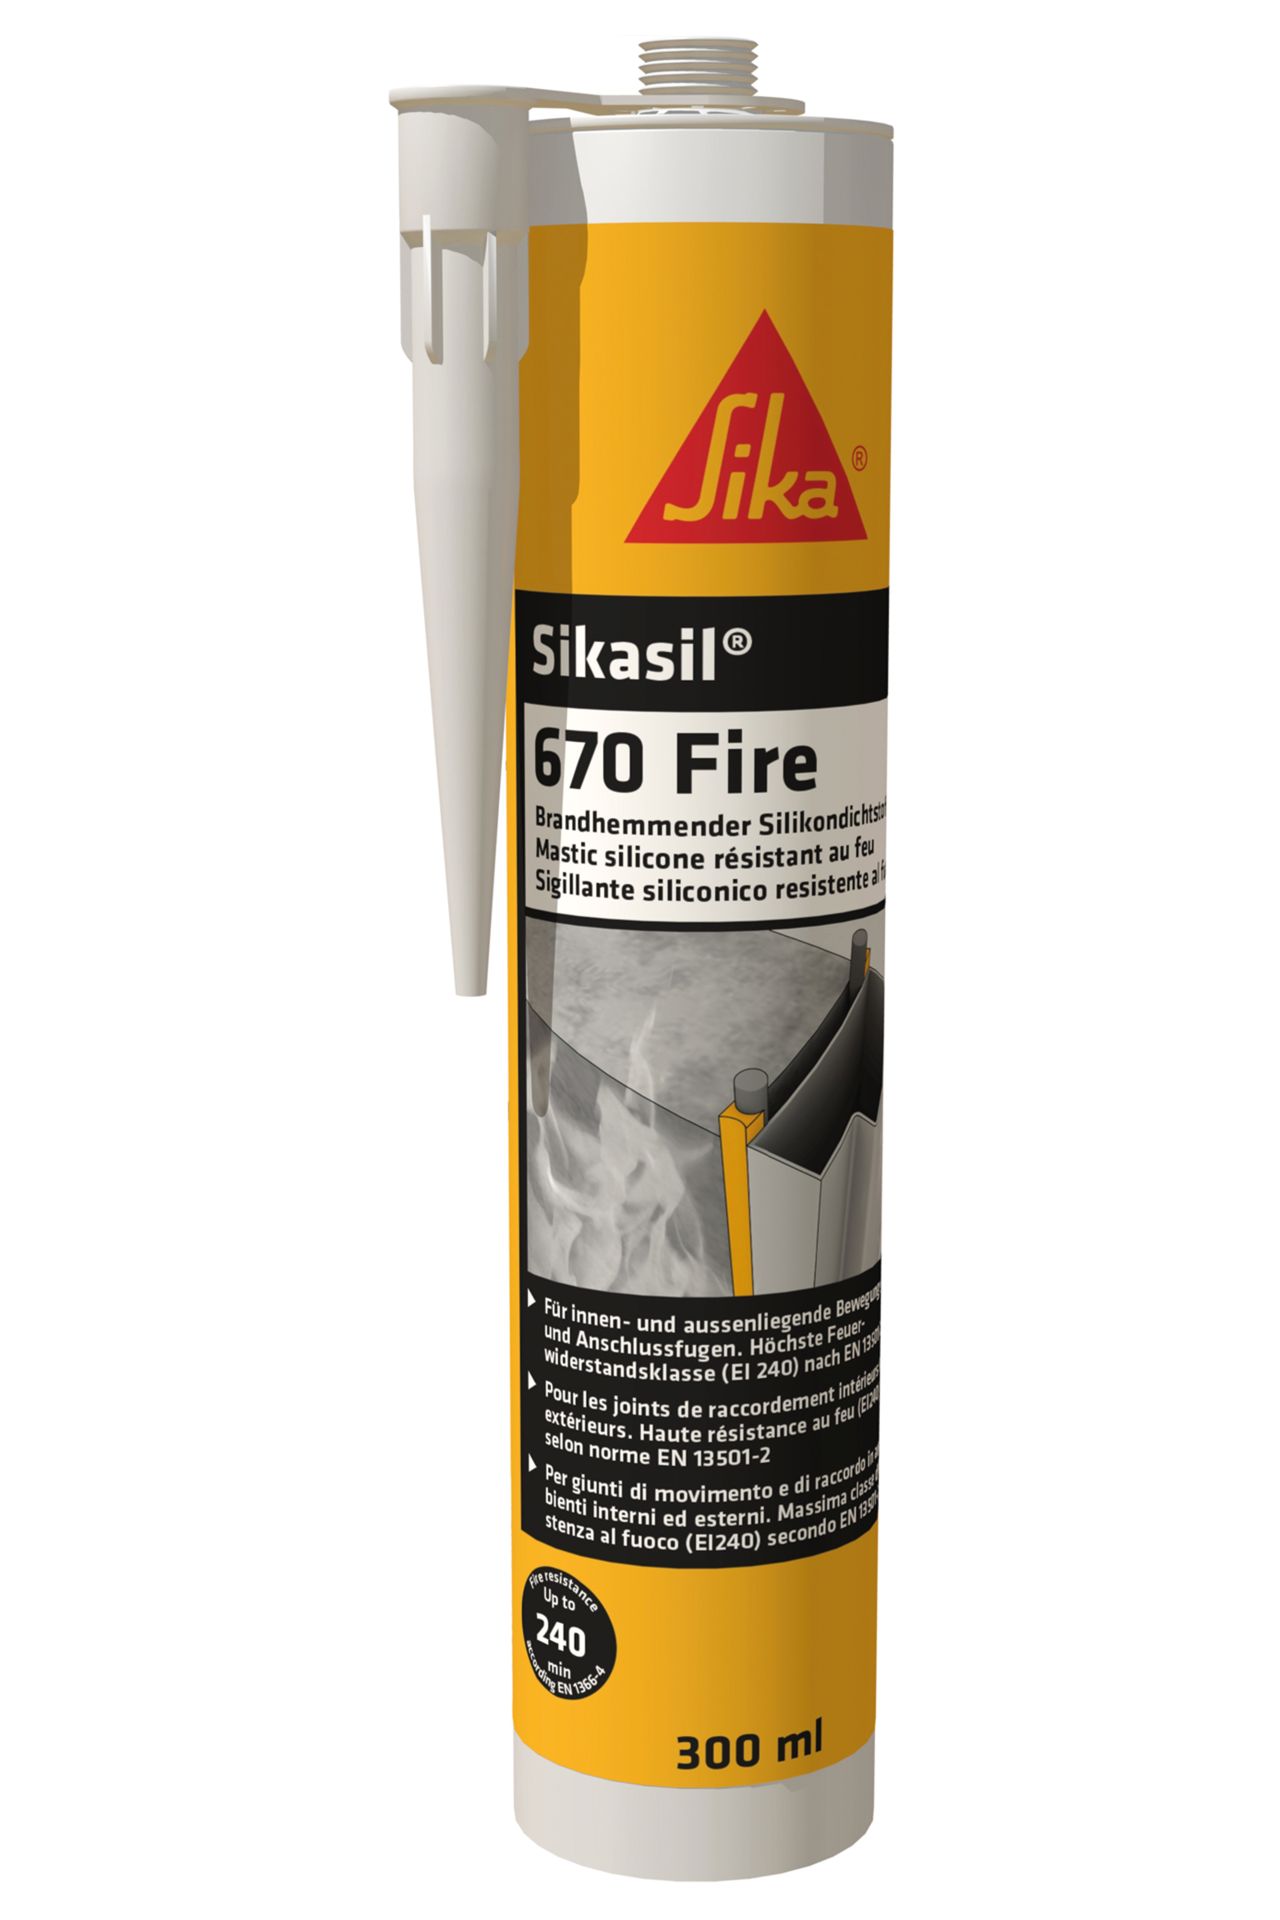 Sikasil-670 Fire